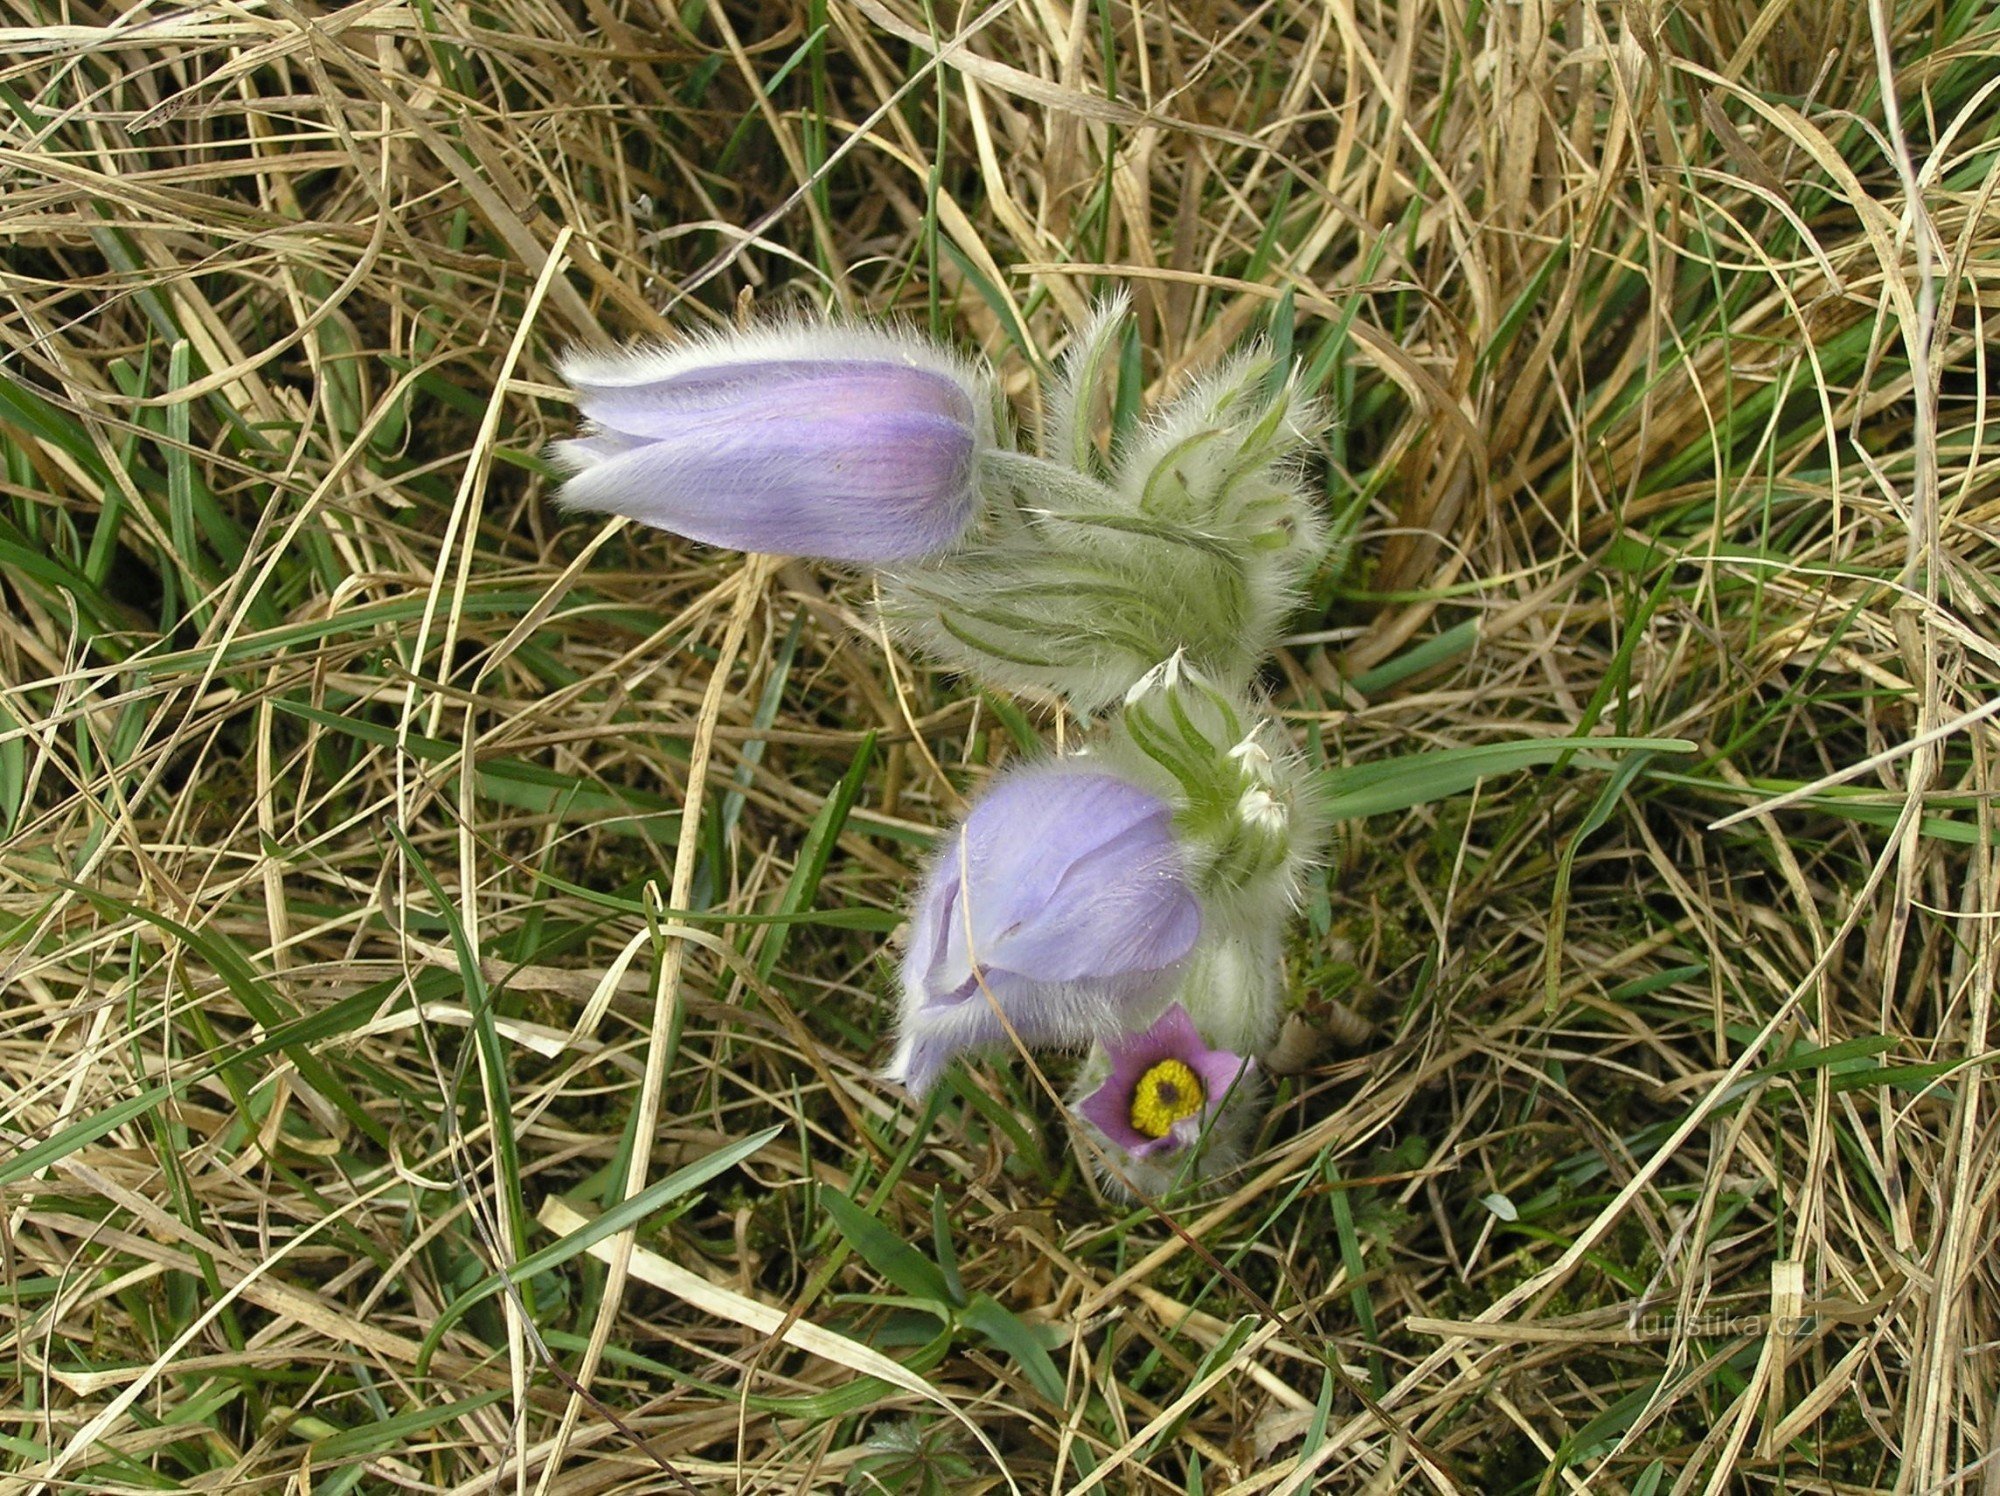 En arcilla blanca - Pulsatilla grandis (Pulsatilla grandis) (abril 2011)